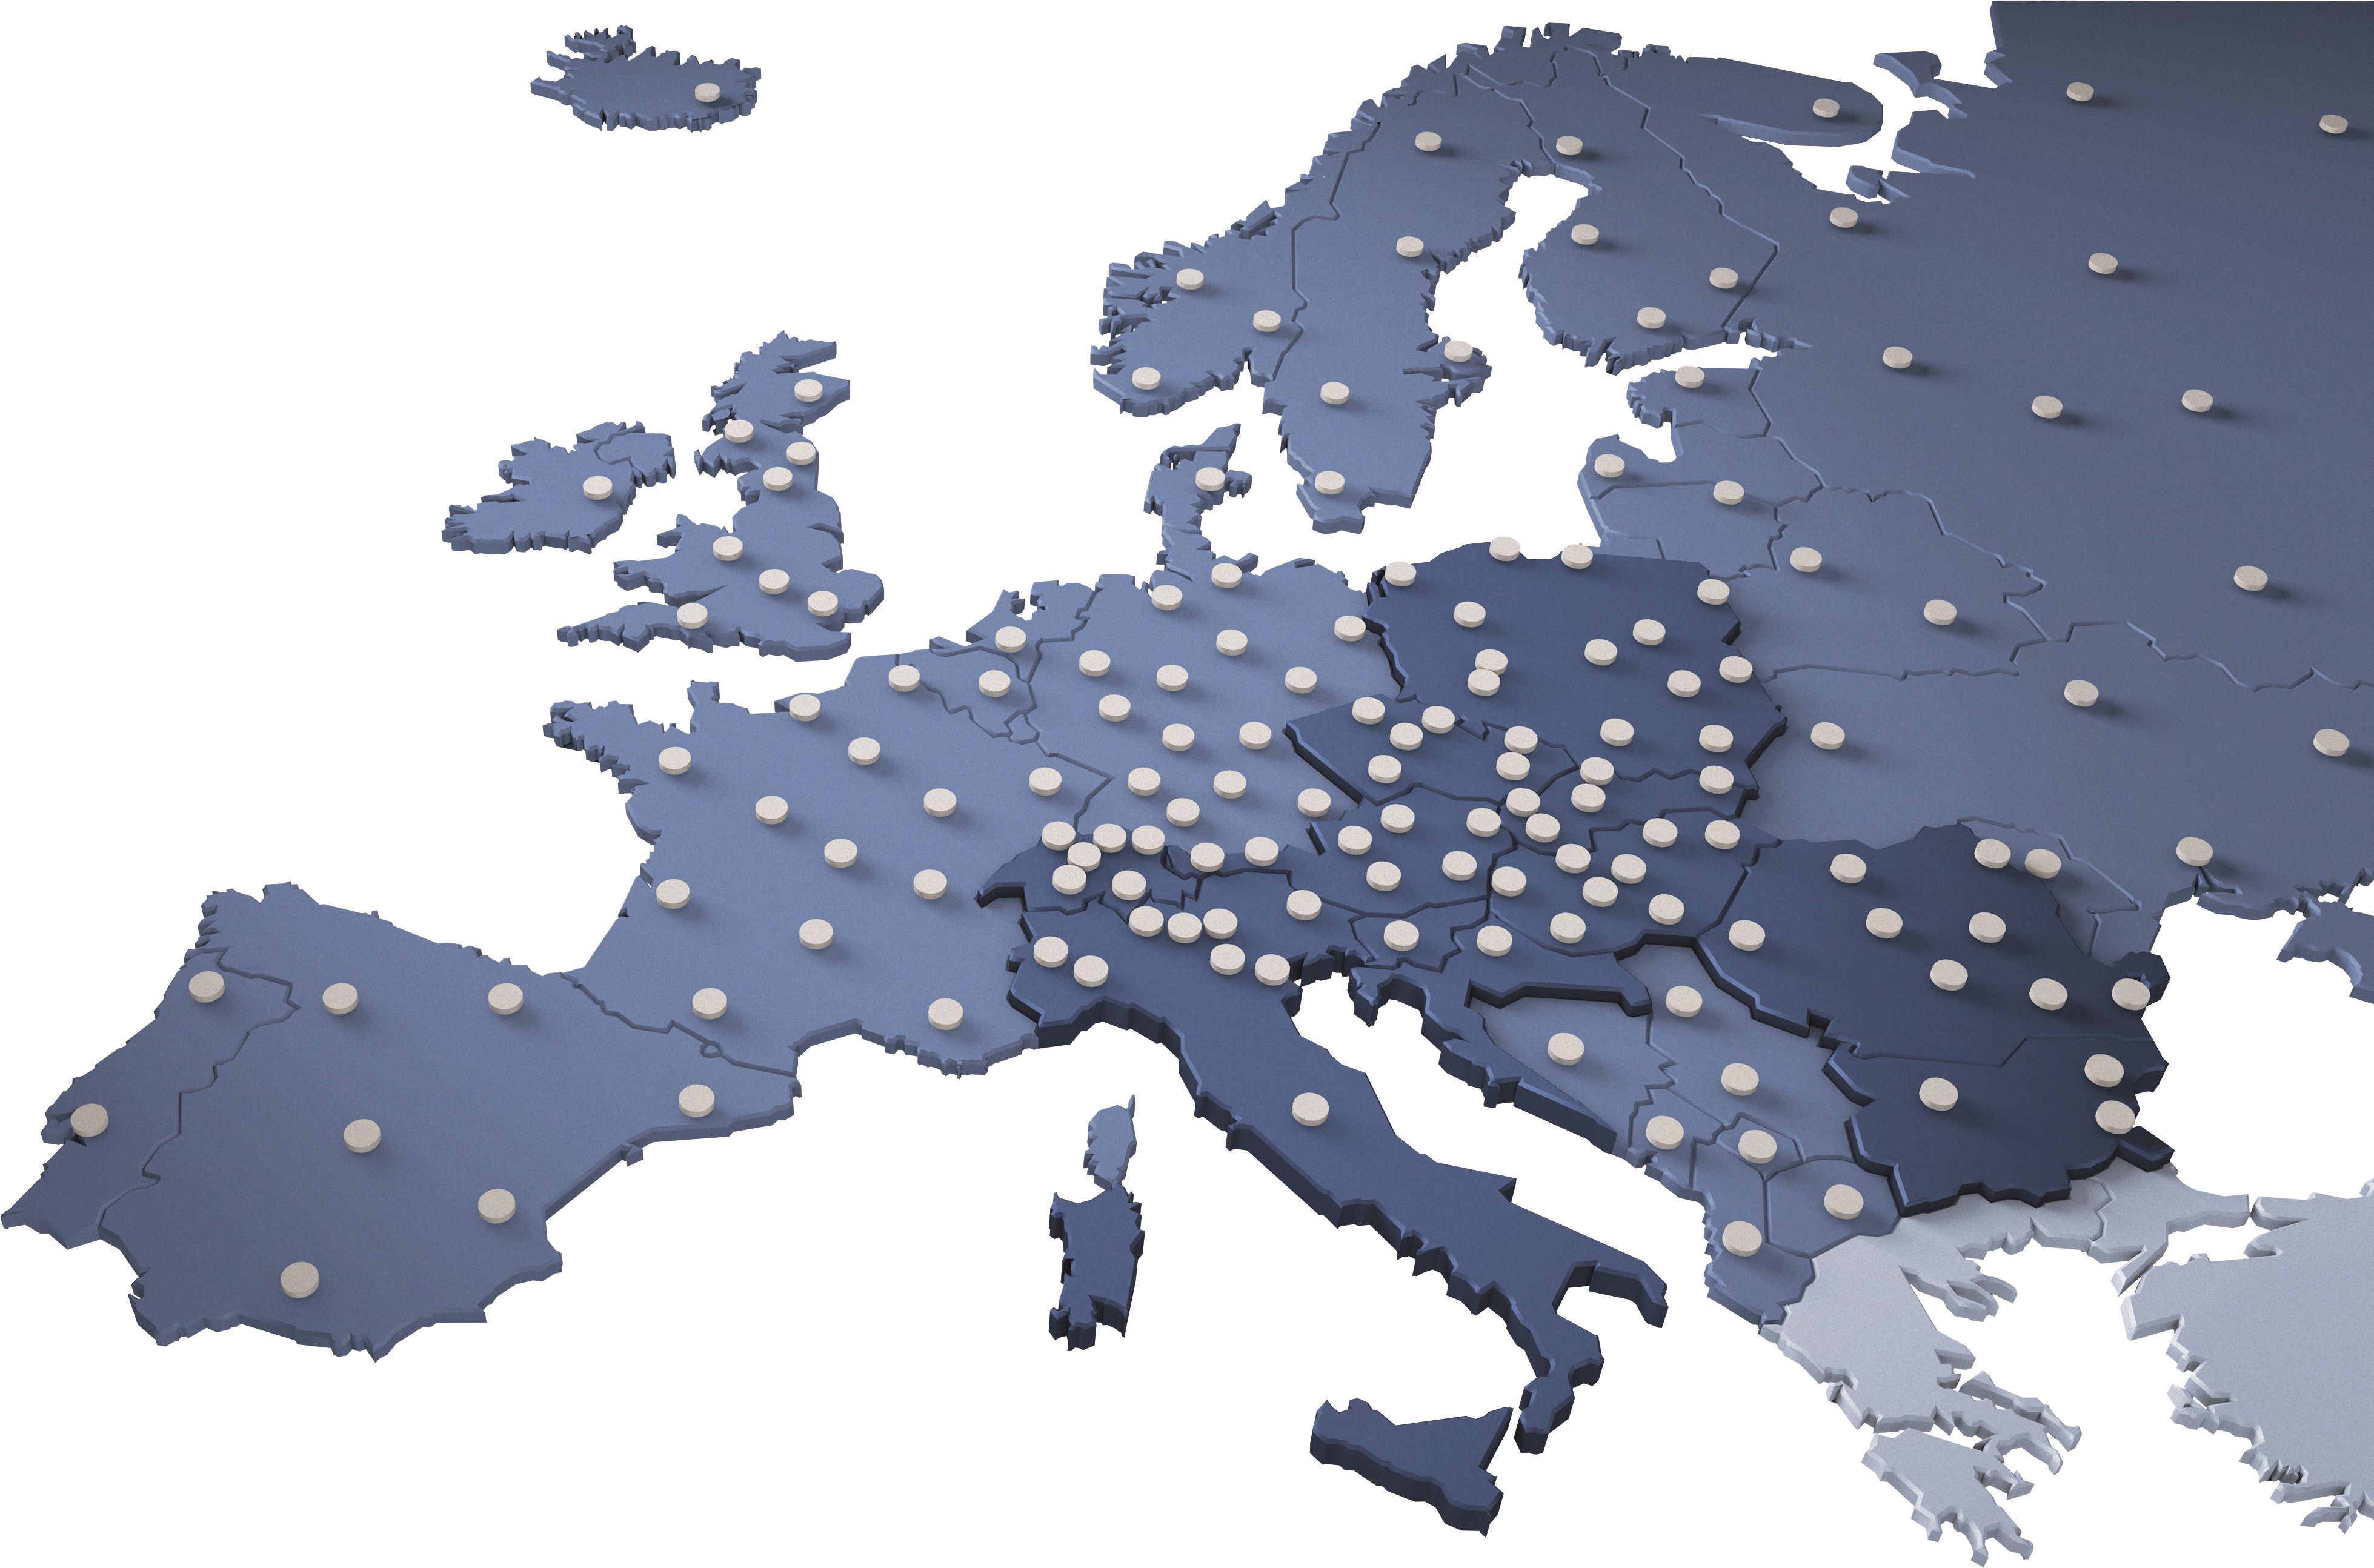 Sieť depozičných skladov po celej Európe